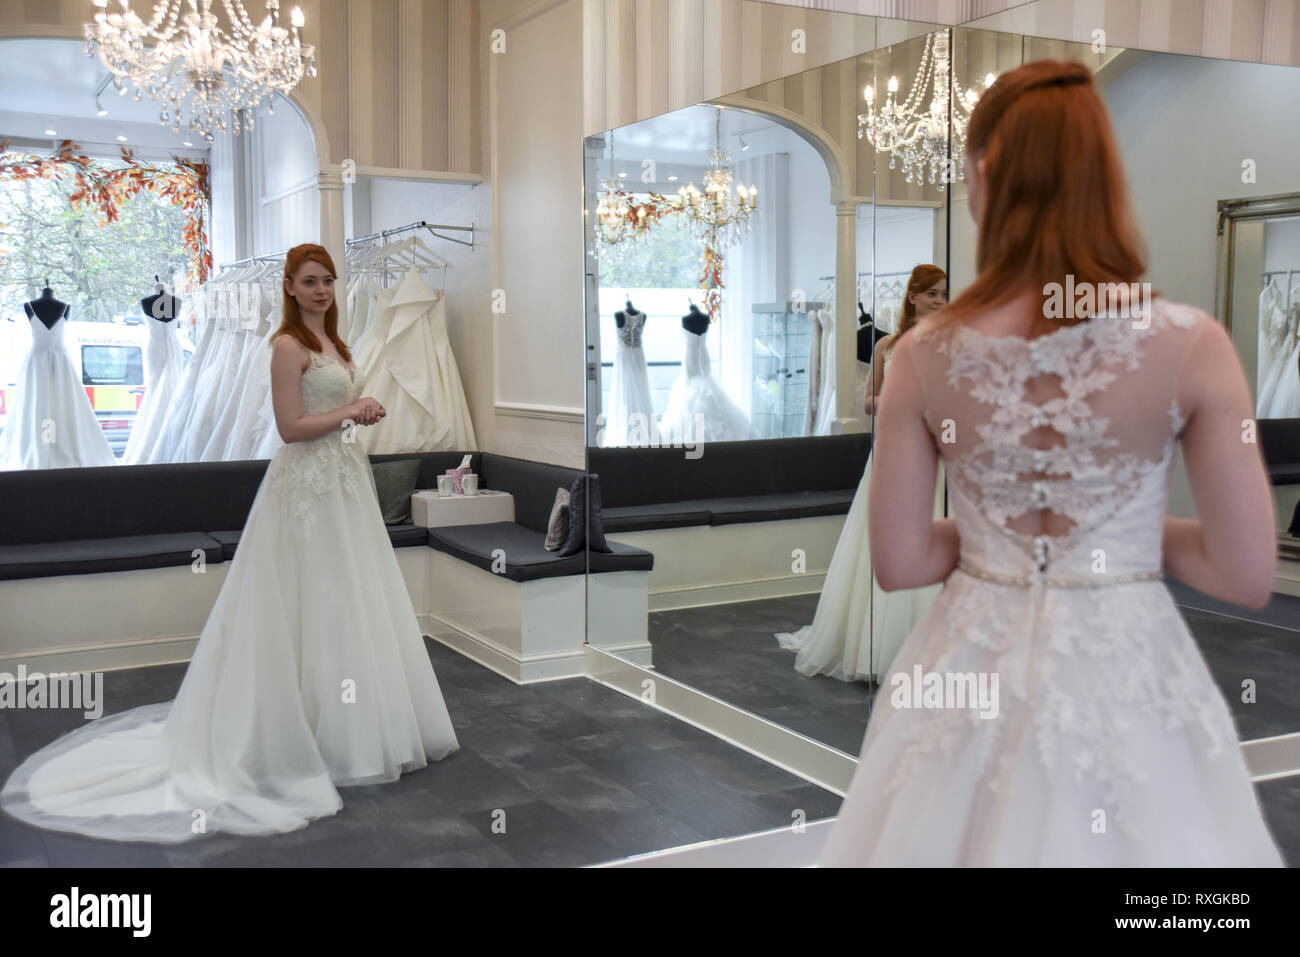 Eine hübsche rothaarige Mädchen ist in einer Wedding Dress Shop suchen t und versuchen, auf weiße Brautkleider Stockfoto